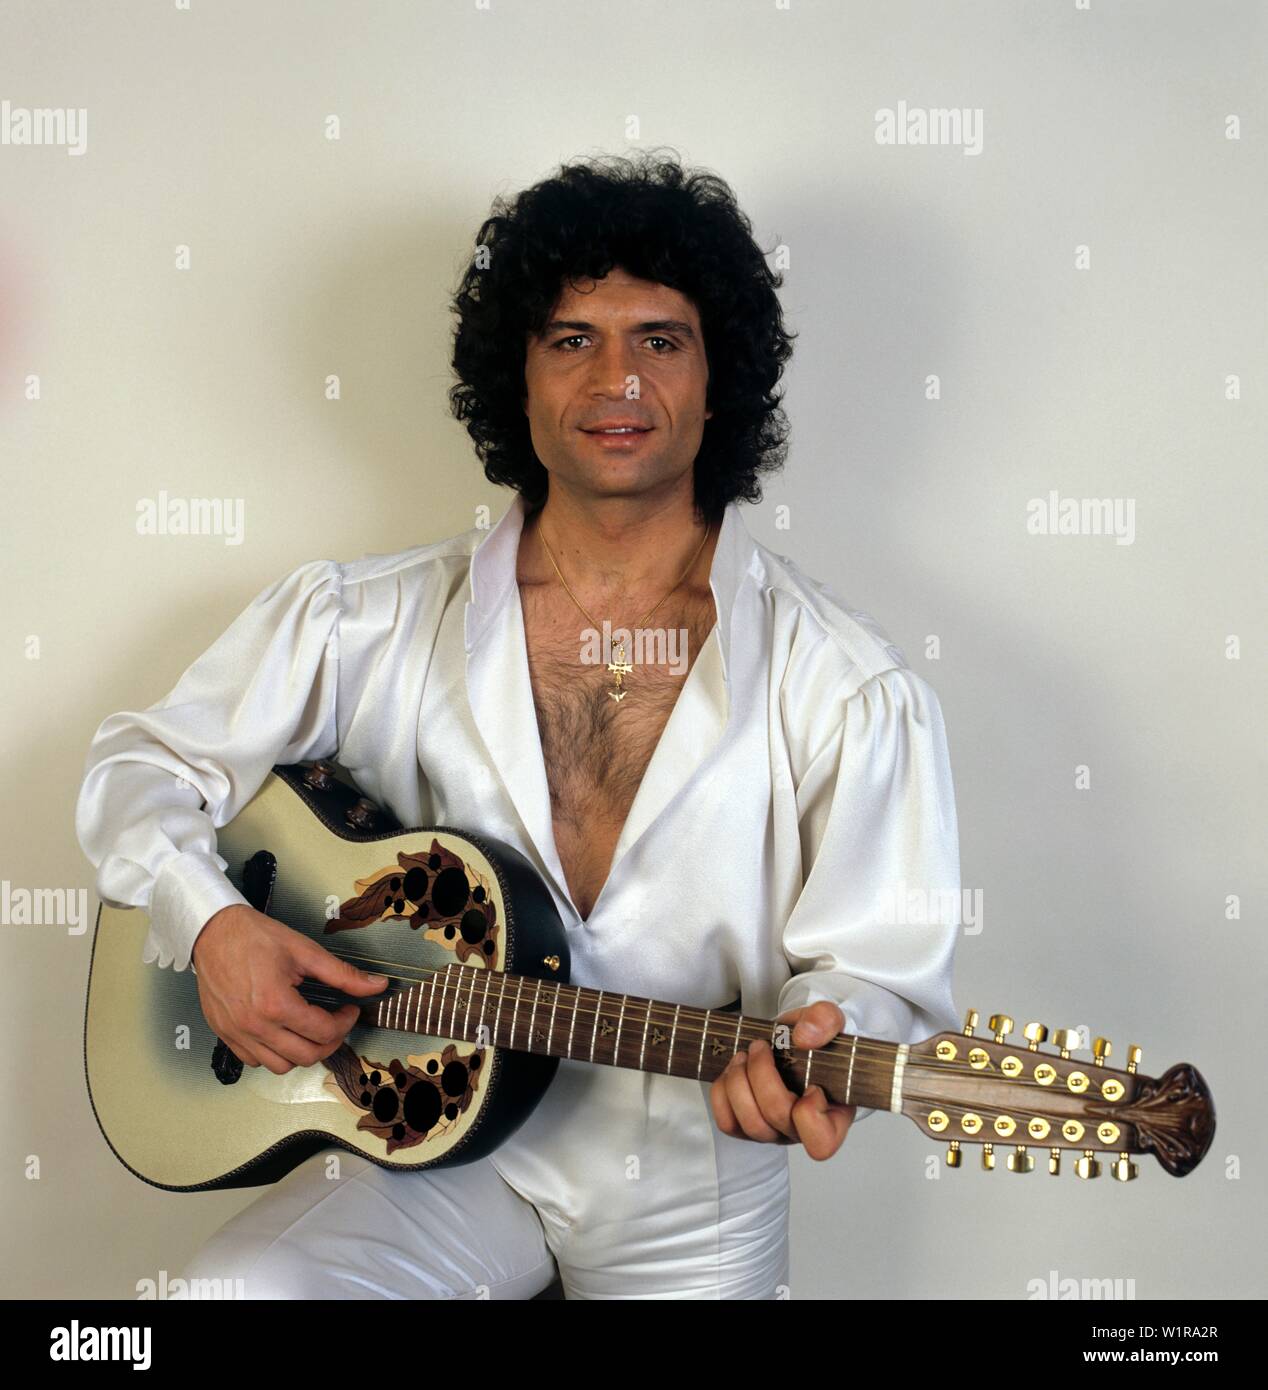 Schlagerstar Costa Cordalis posiert senneur mit Gitarre für ein Foto. Musicien Costa Cordalis posant pour une photo avec sa guitare. Banque D'Images